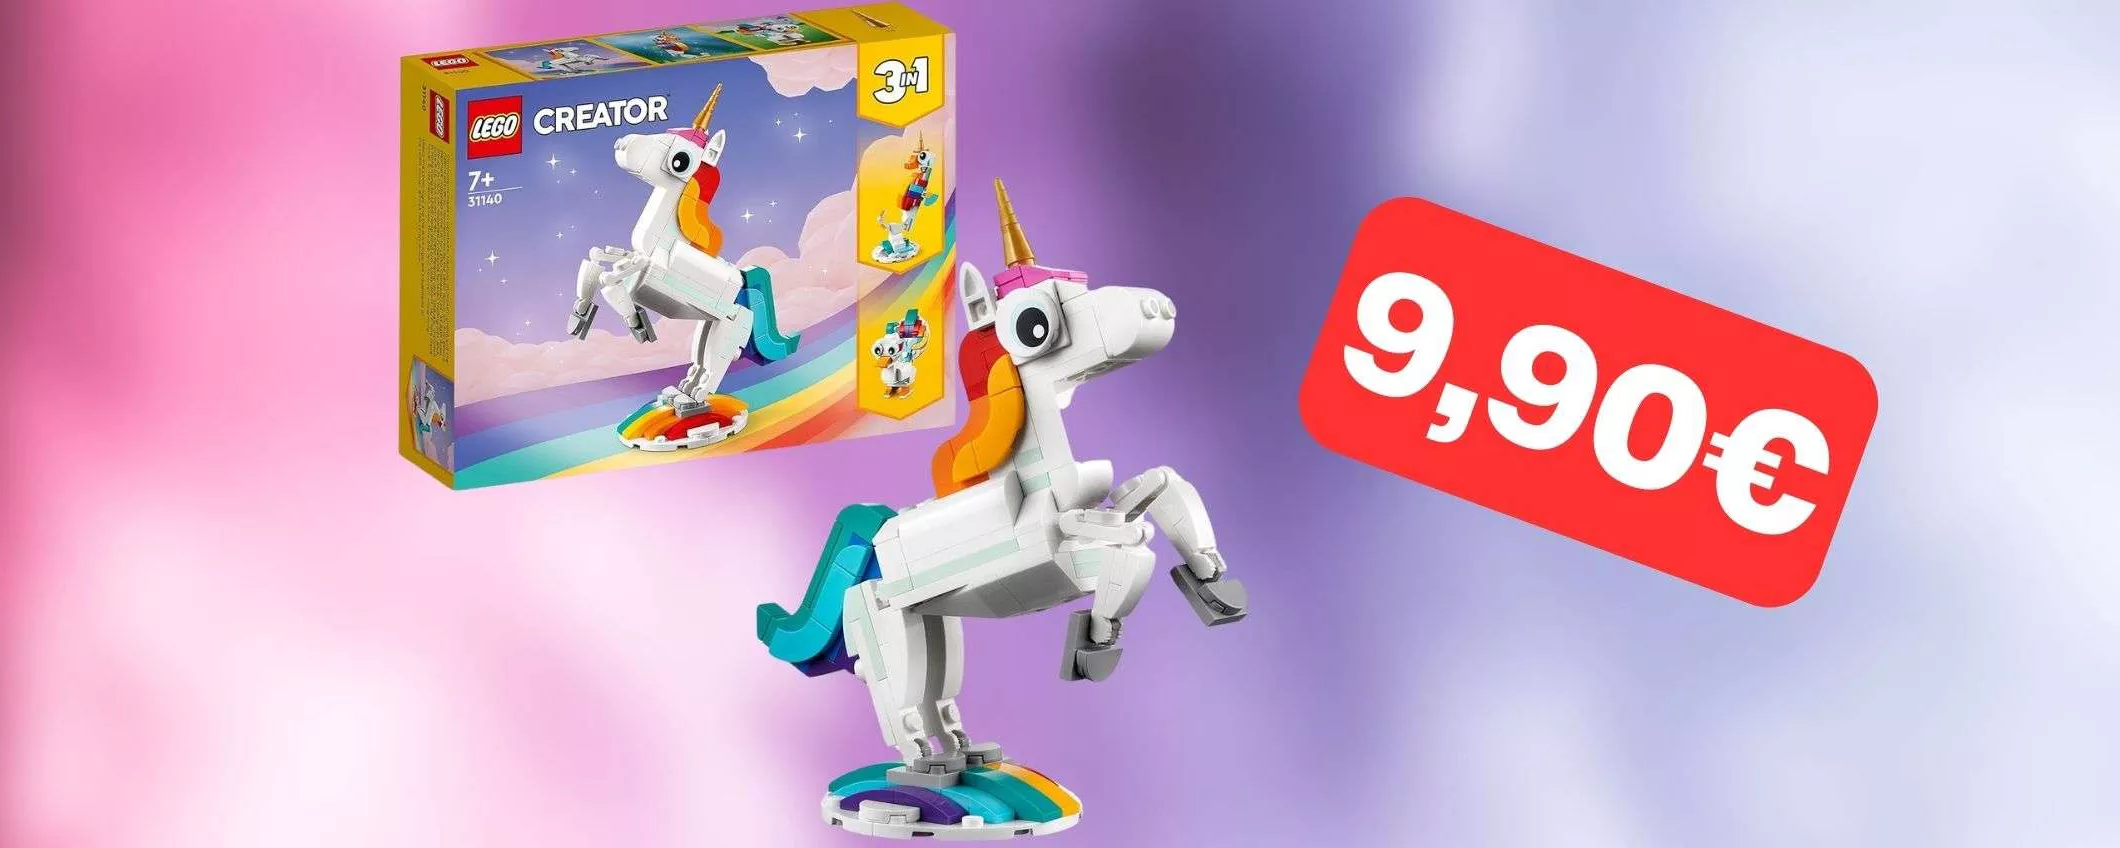 Il LEGO Unicorno 3-in-1 è in offerta a soli 9,90 euro su